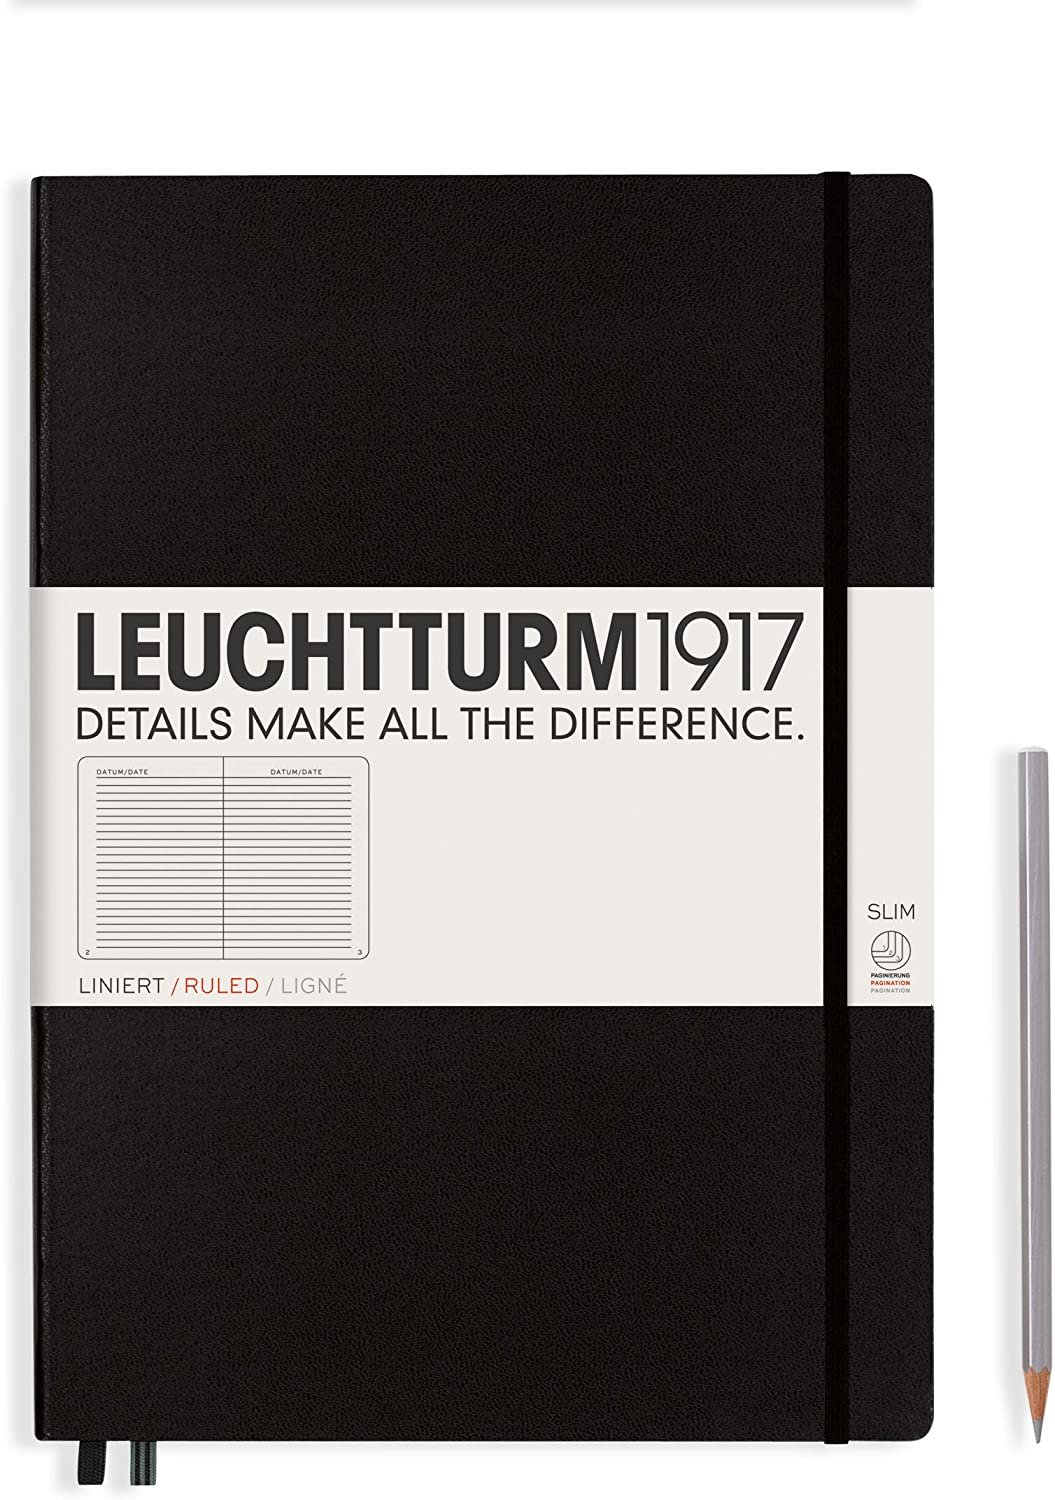 A4 Slim Ruled Notebook, Leuchtturm1917